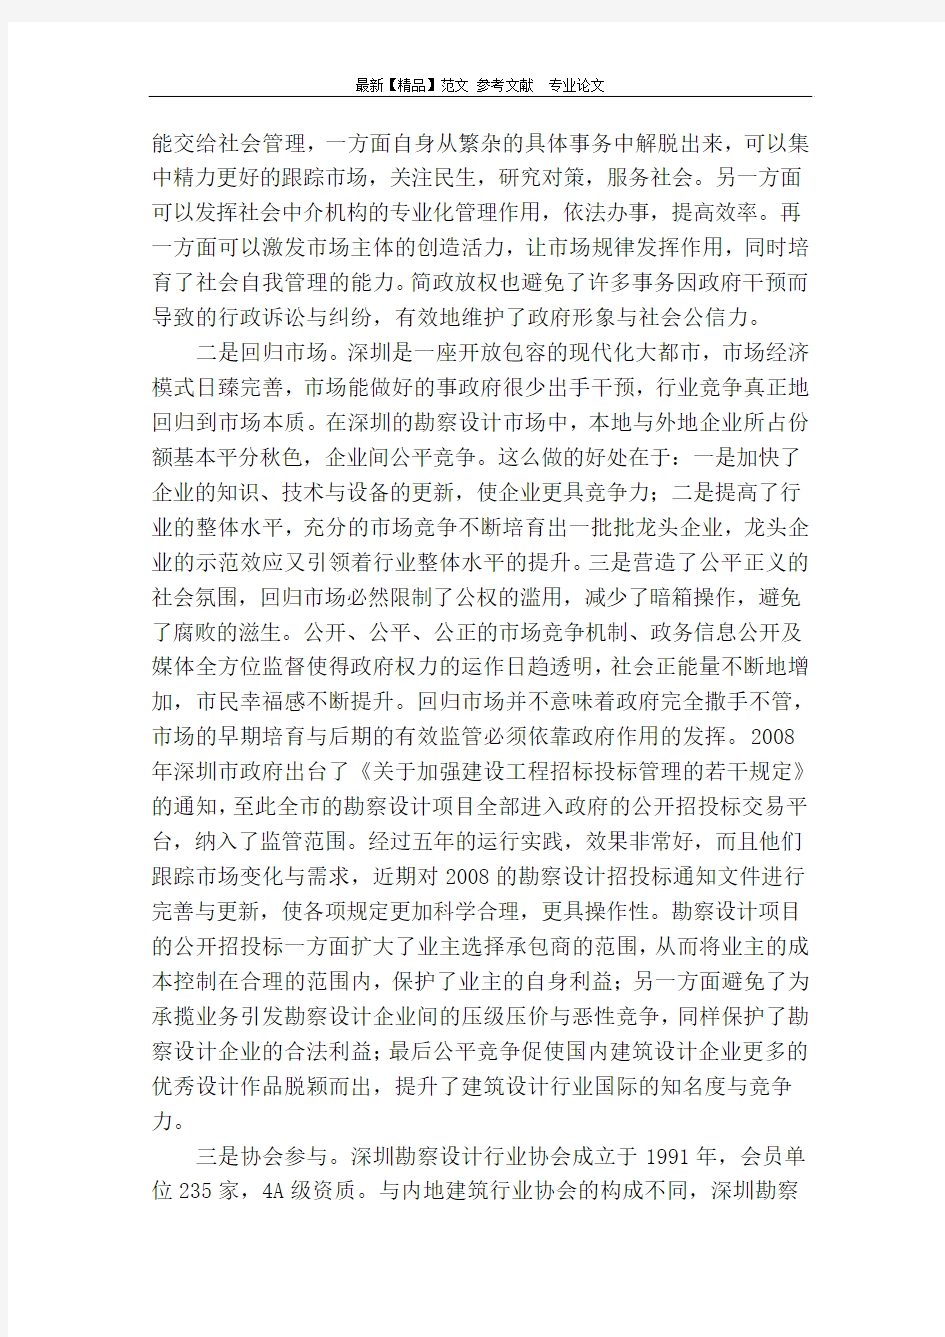 深圳市勘察设计行业监管的经验与启示